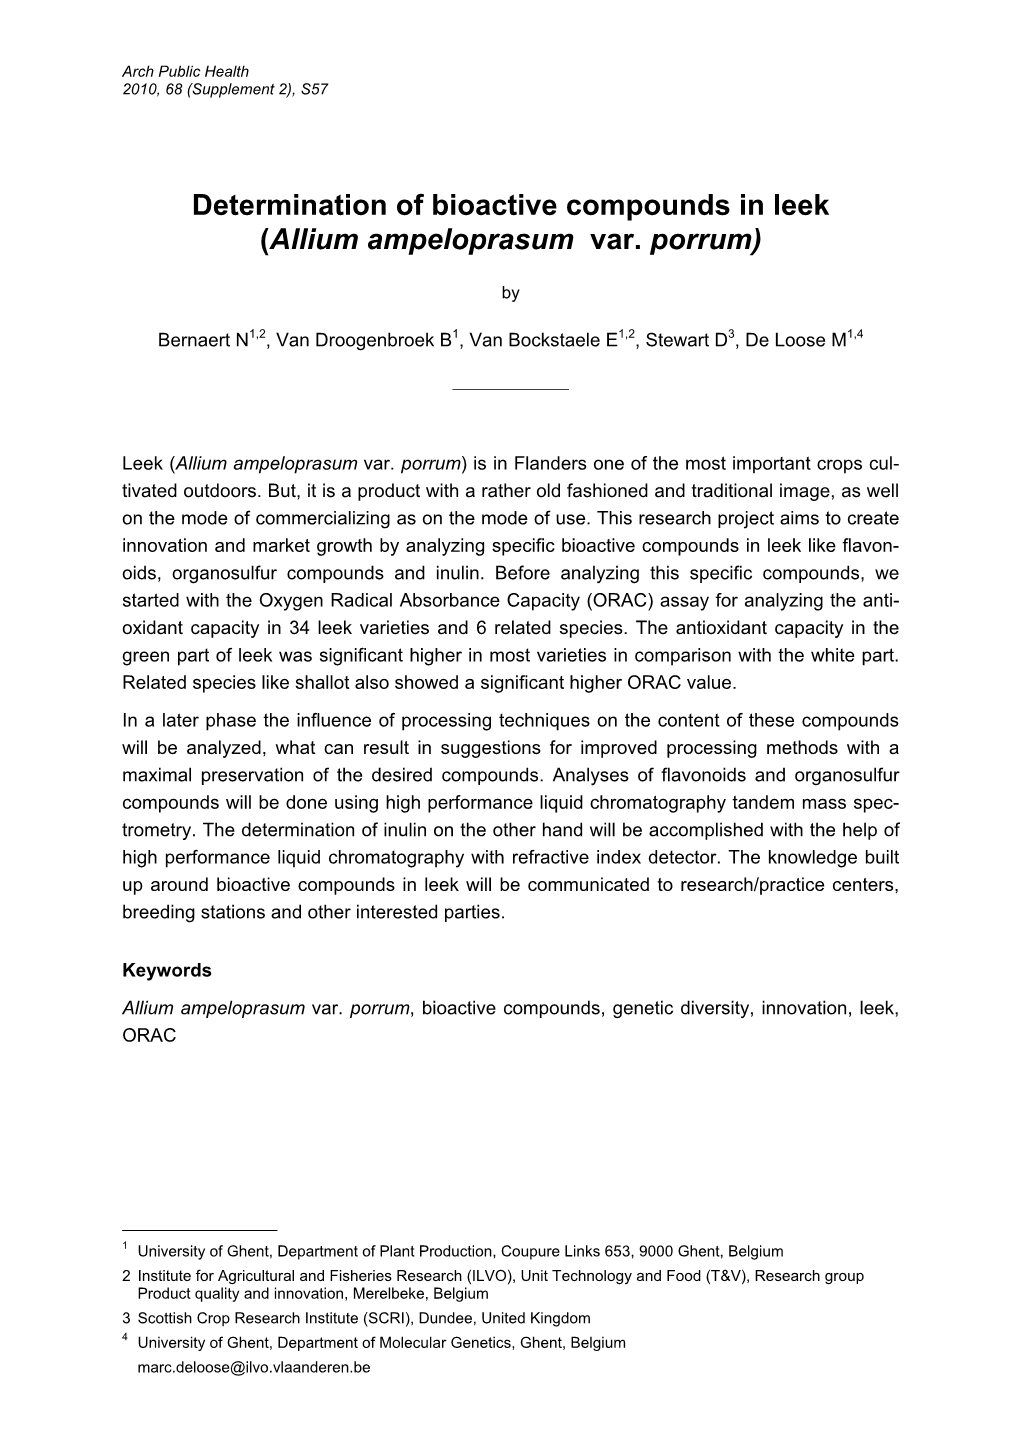 Determination of Bioactive Compounds in Leek (Allium Ampeloprasum Var